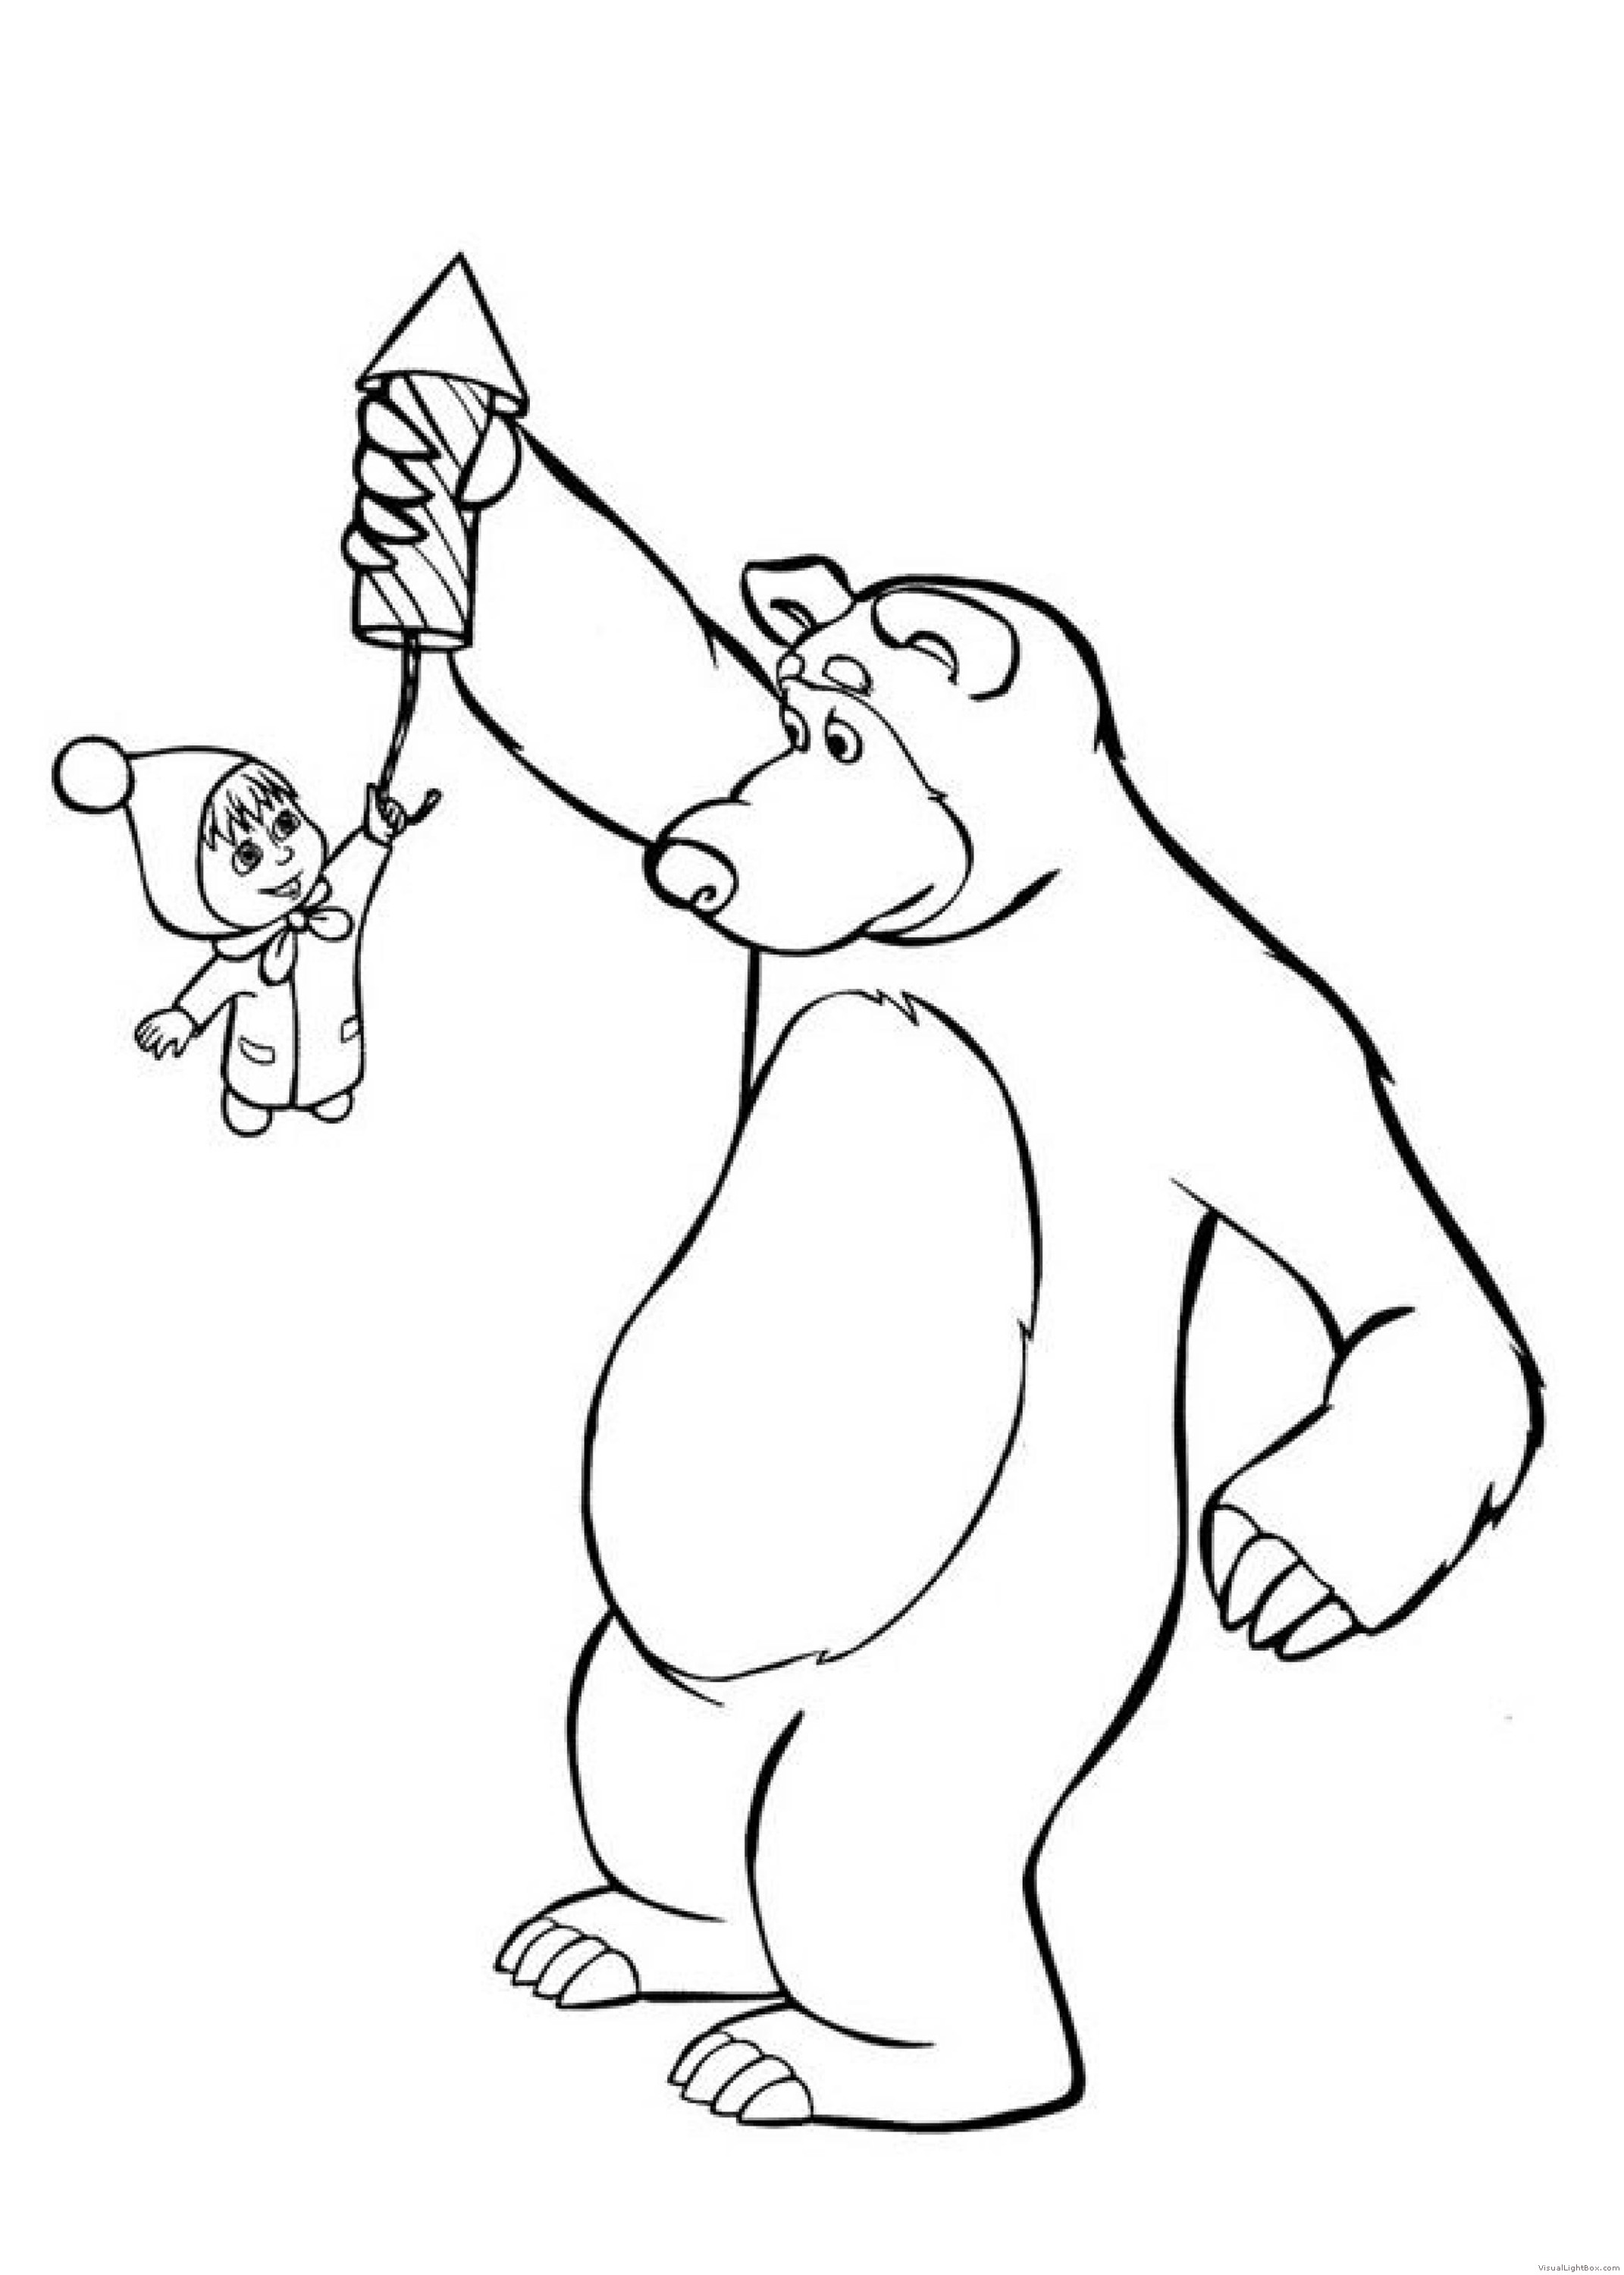 Раскраска маша и медведь 2. Маша и медведь рисунки для раскрашивания. Раскраска мишка из мультика Маша и медведь. Раскраска Маша и медведь для малышей печать. Картинки для раскрашивания для детей Маша и медведь.